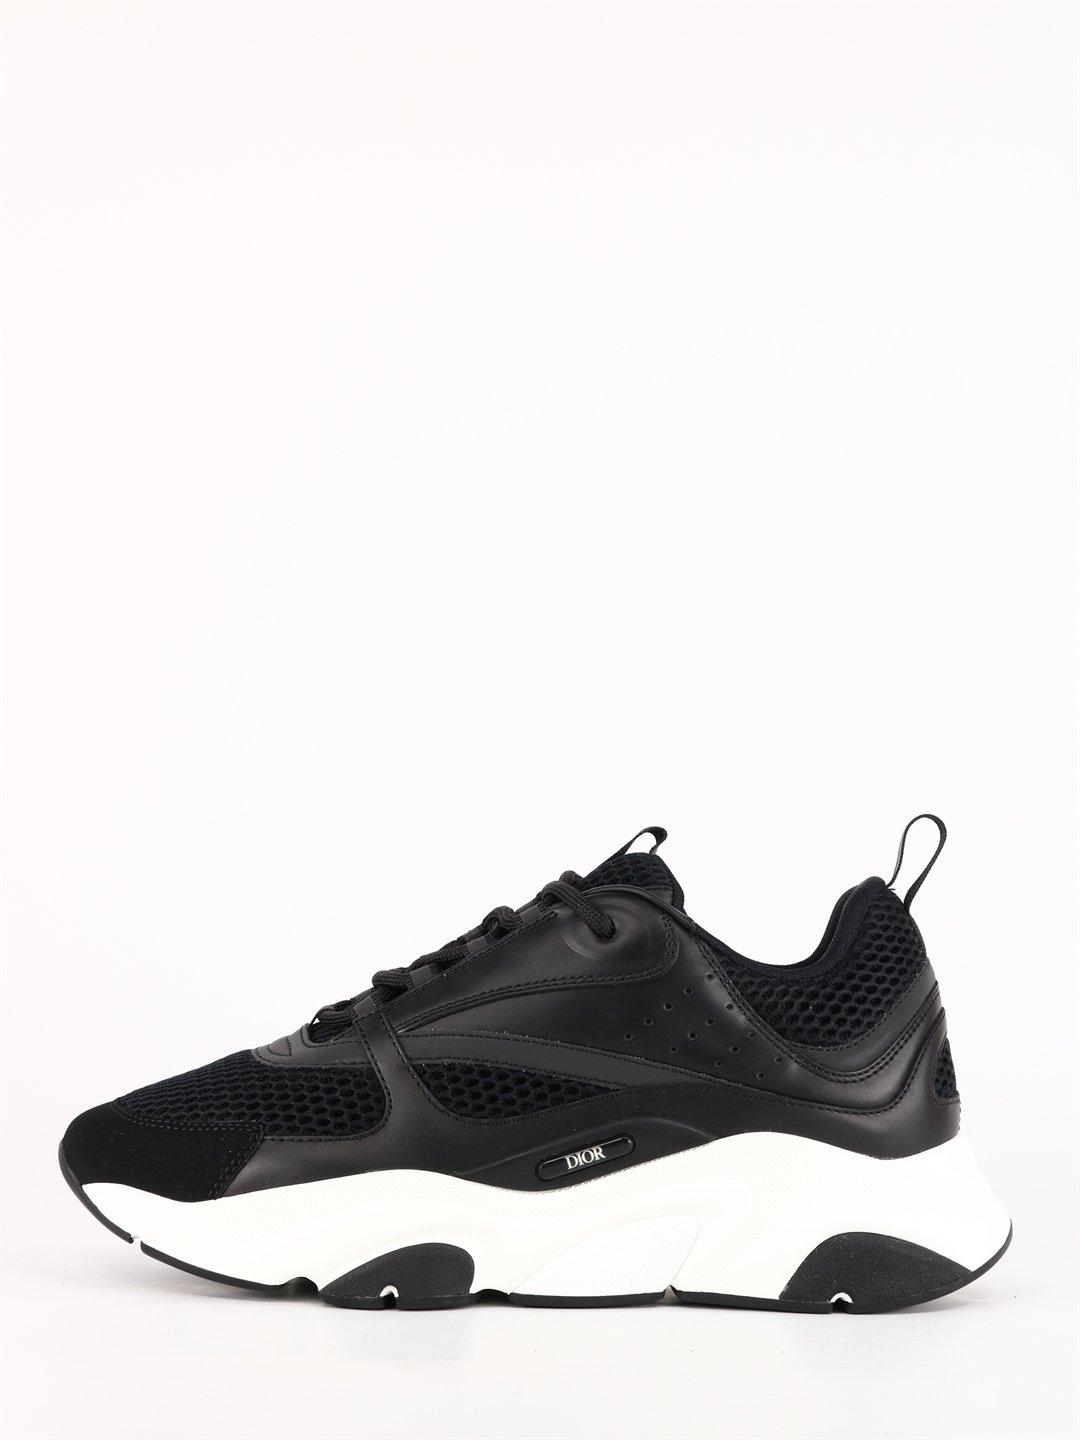 B22 Dior Sneakers  Sneakers black, Dior sneakers, Sneakers